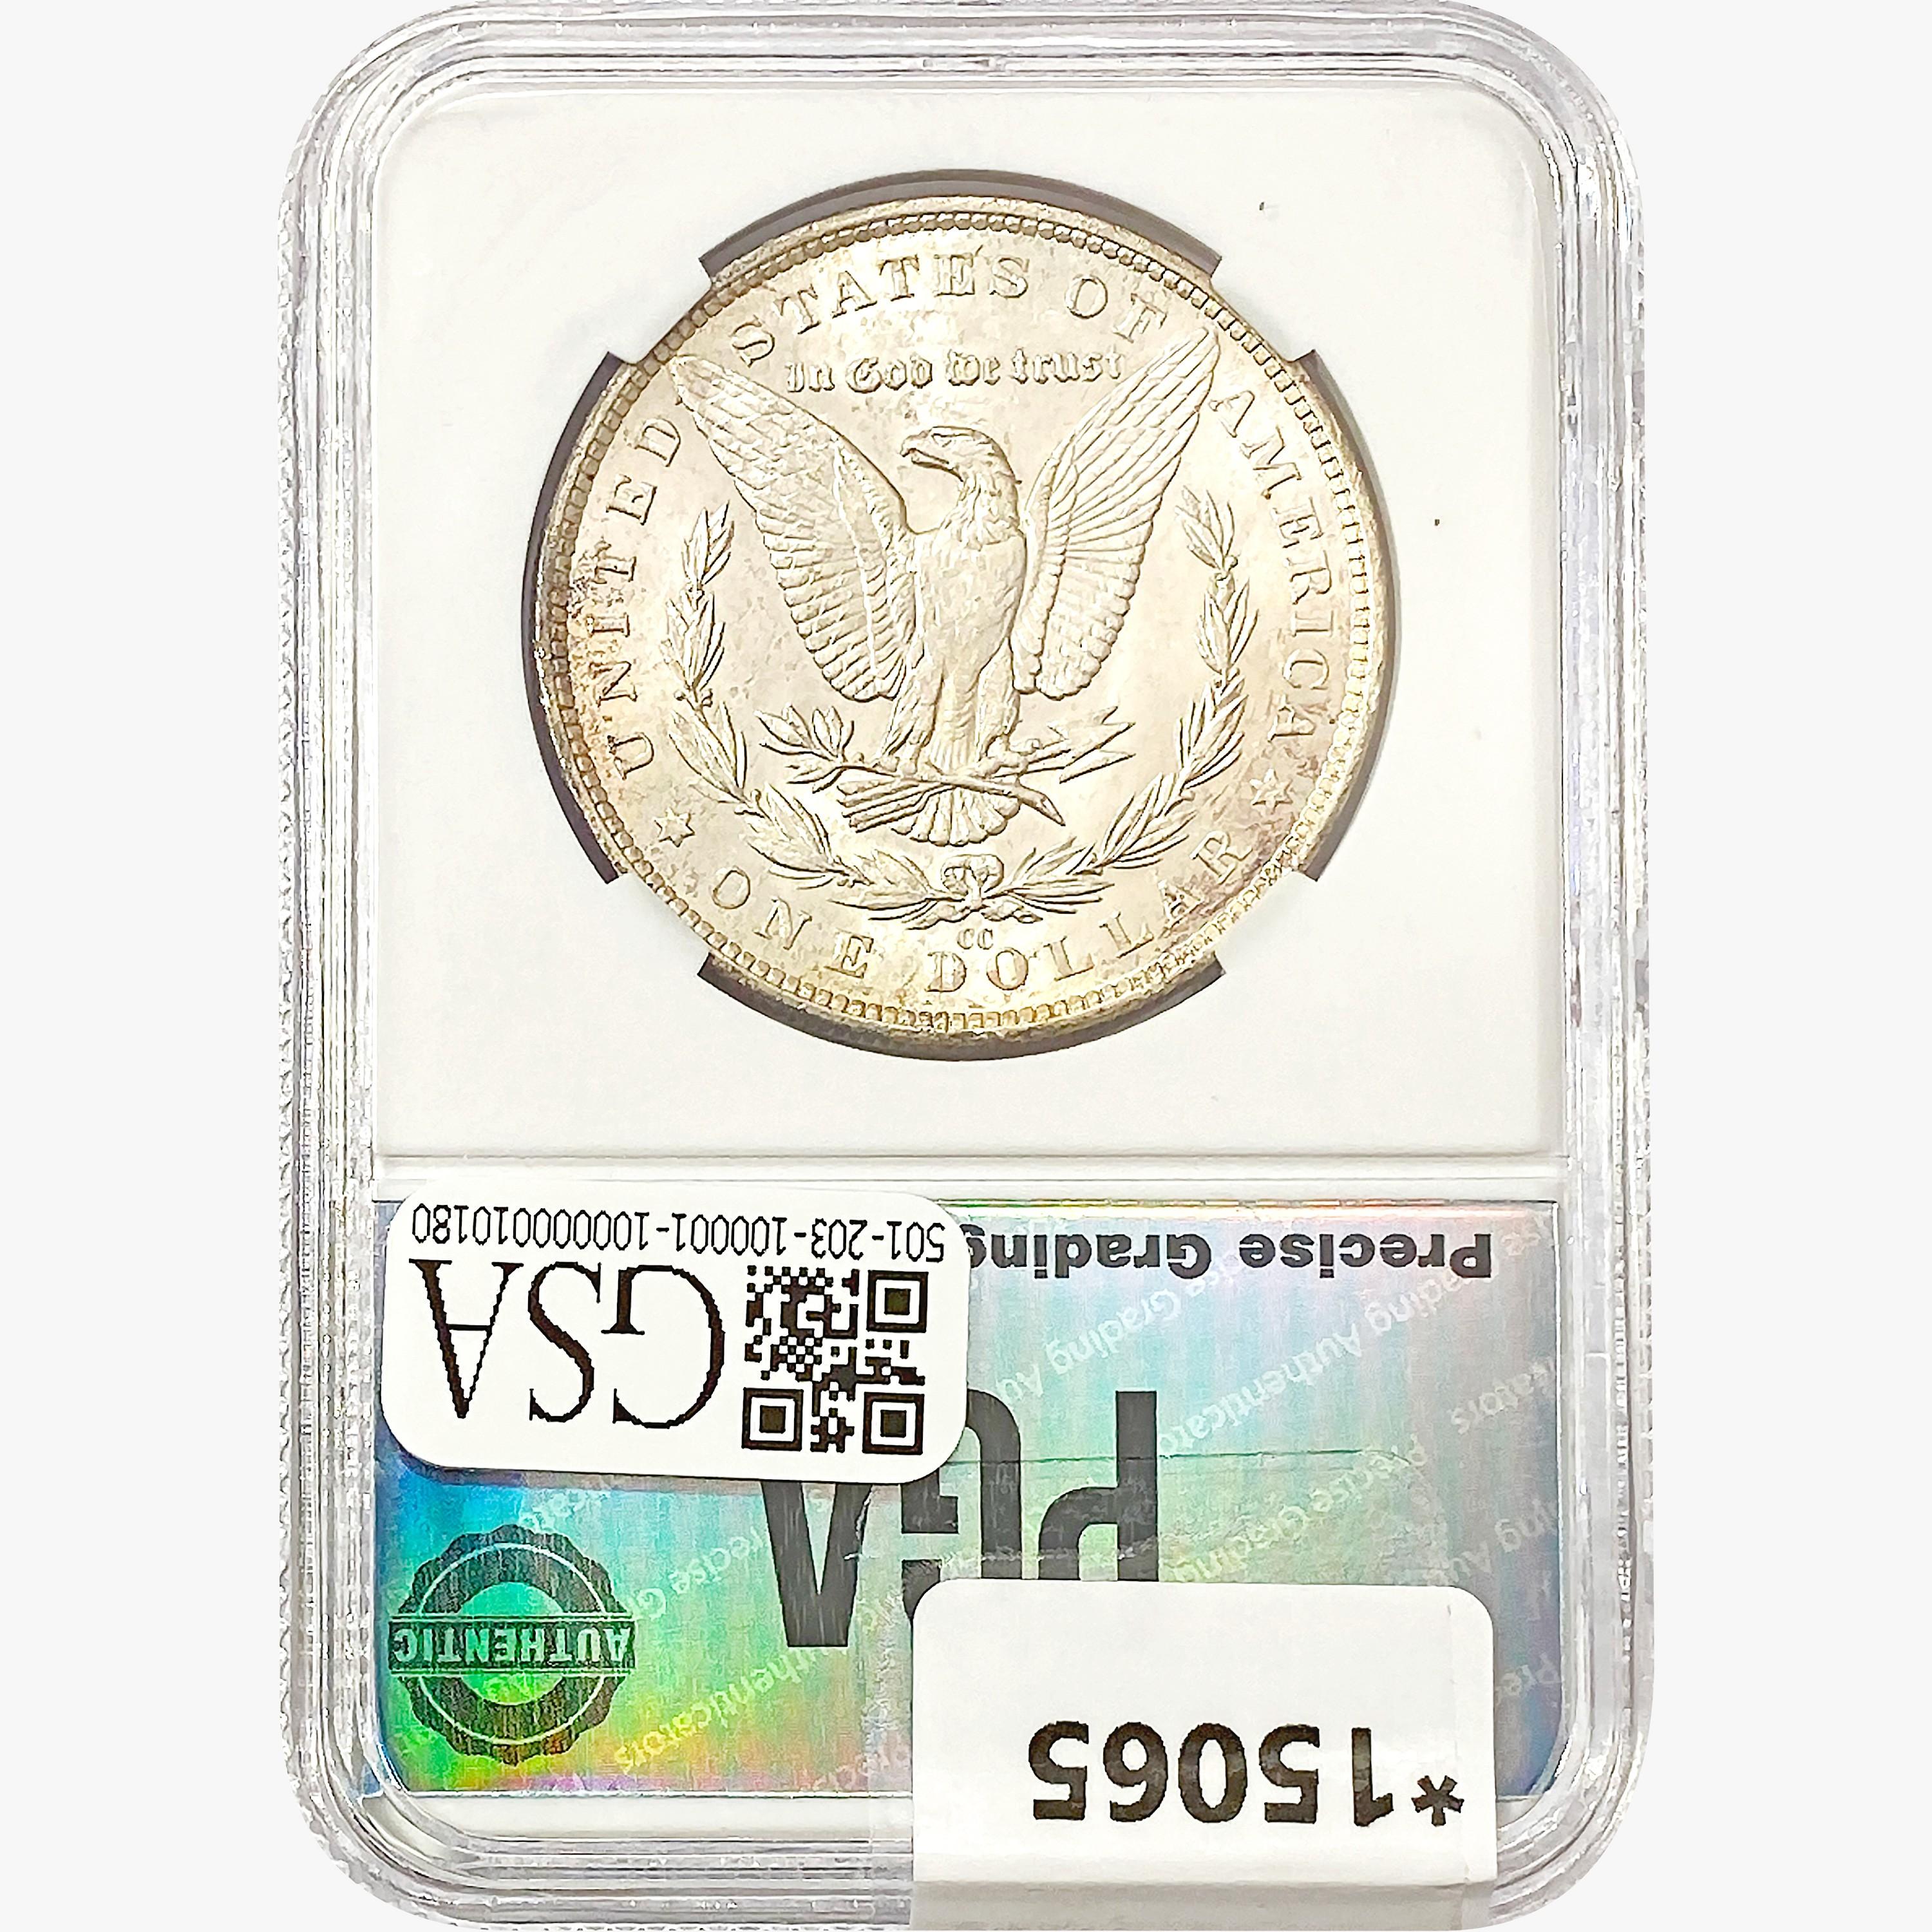 1882-CC Morgan Silver Dollar PGA MS66